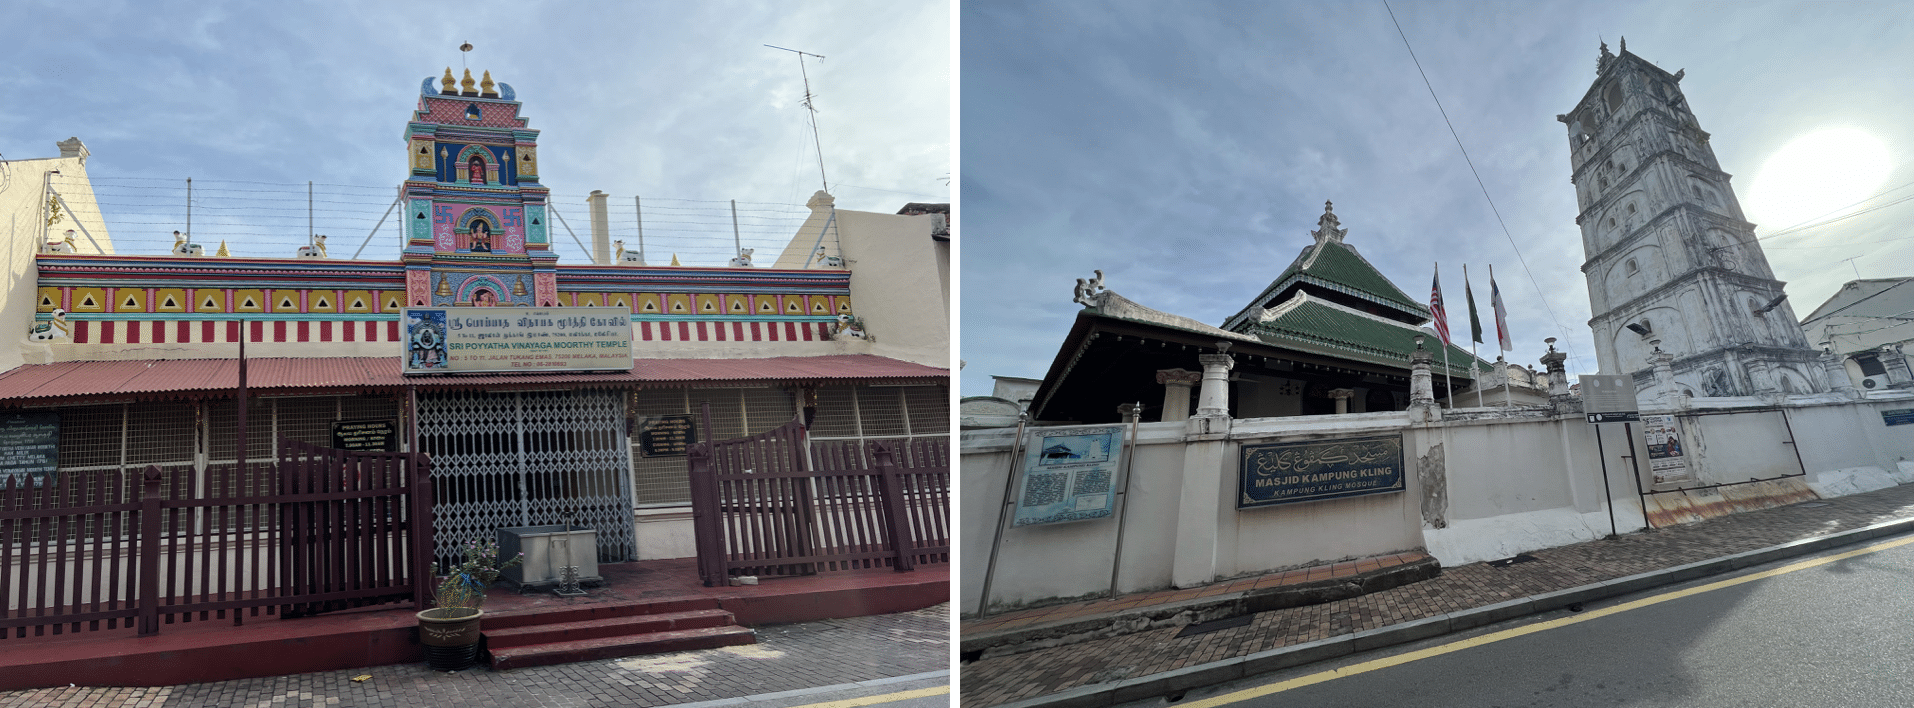 le temple indien et la mosquee sur la rue de l harmony a malacca en malaisie